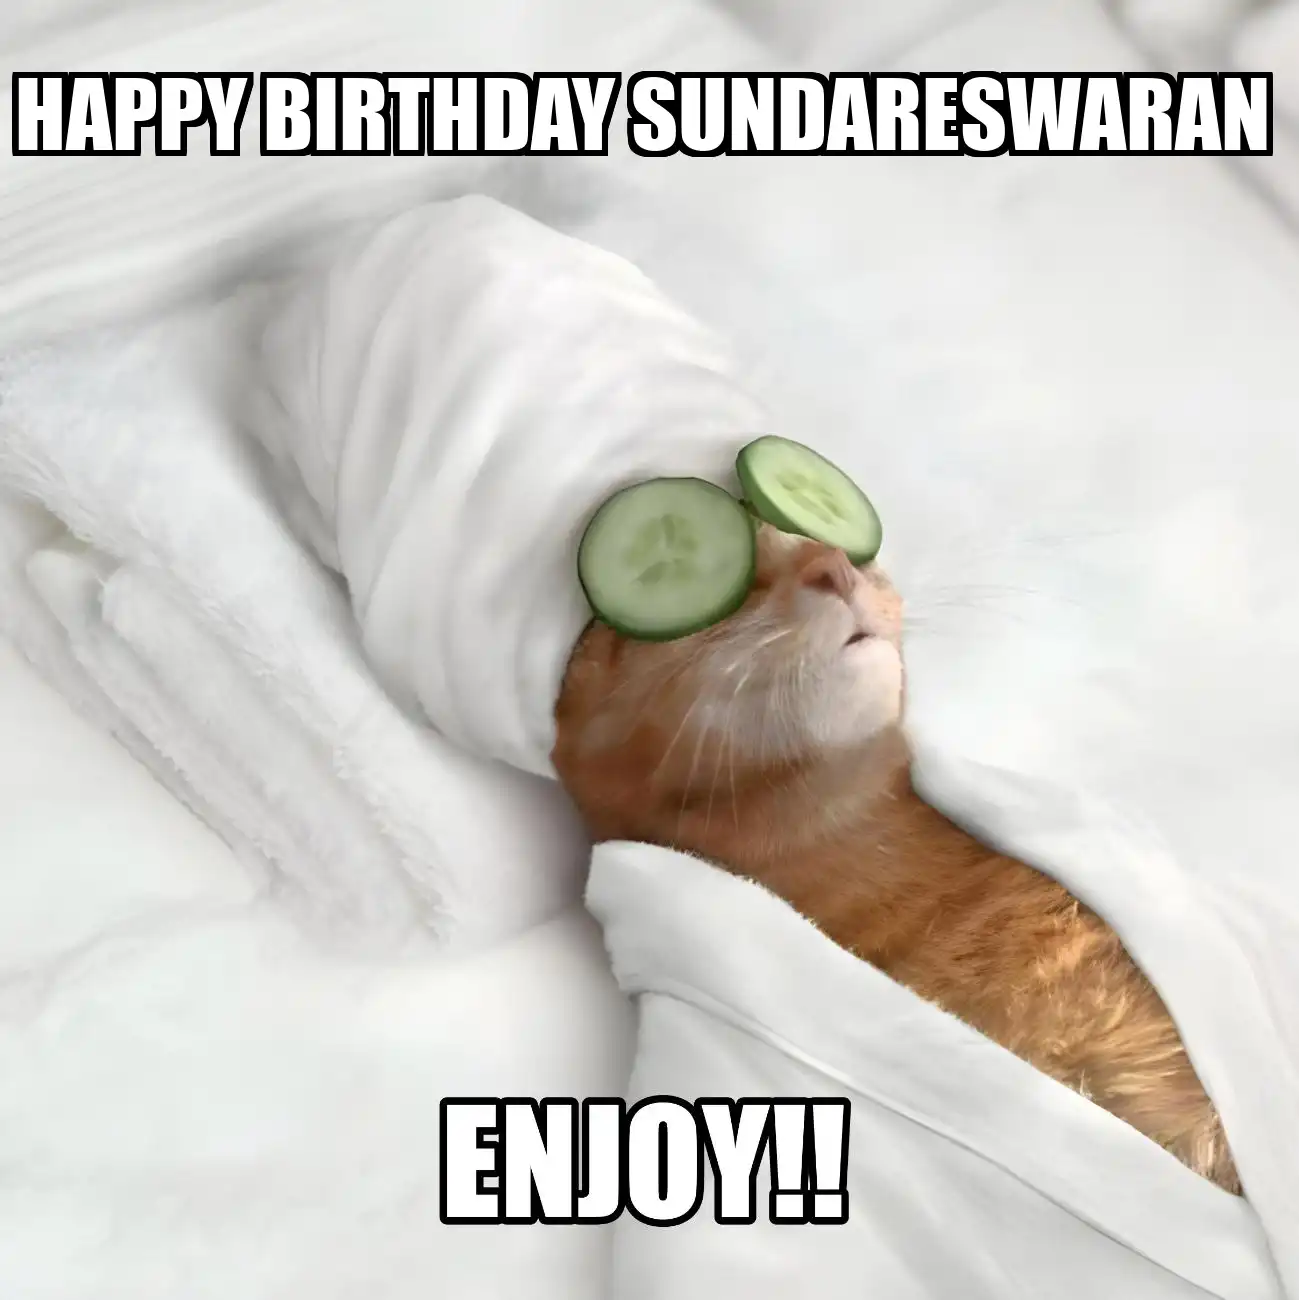 Happy Birthday Sundareswaran Enjoy Cat Meme